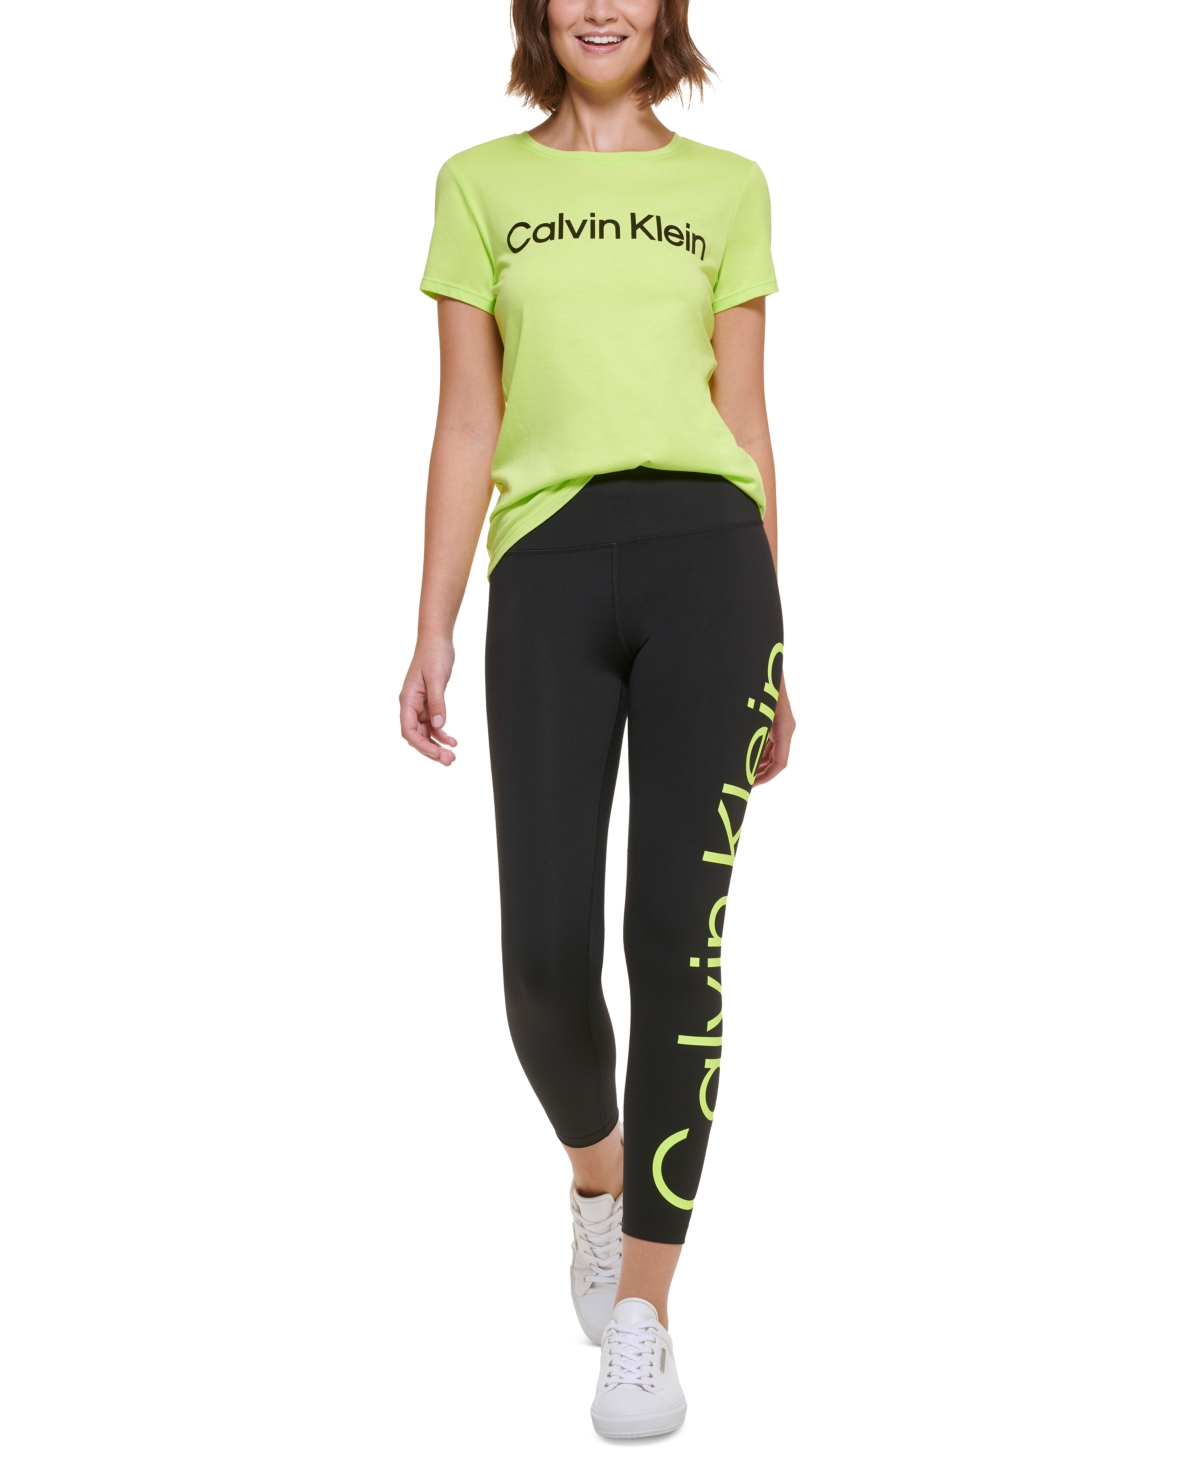 Calvin Klein Jumbo-Logo High-Waist Leggings - Macy's